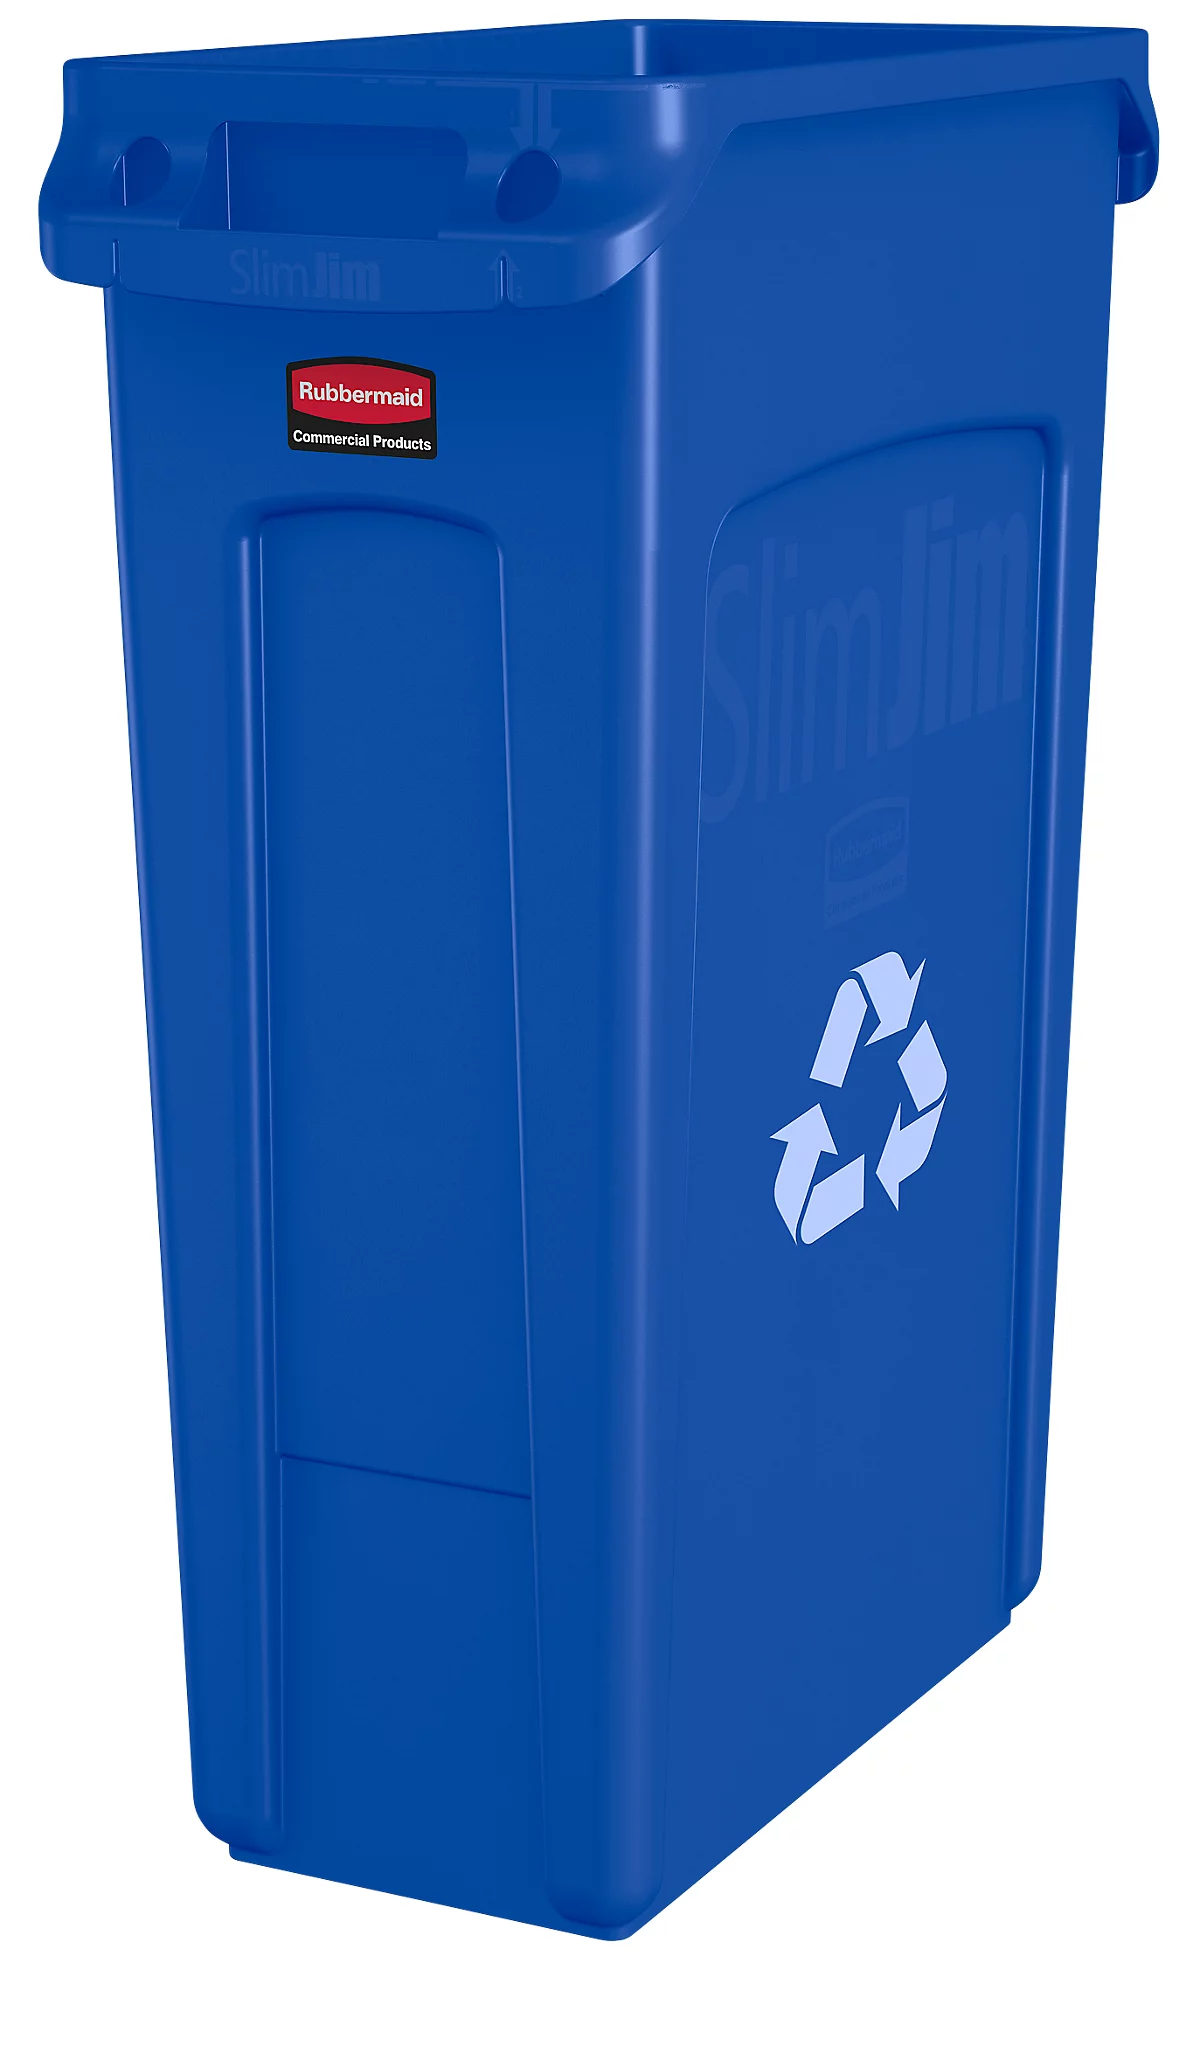 Cubo de basura Slim Jim®, 87 l, azul, con símbolo de reciclaje